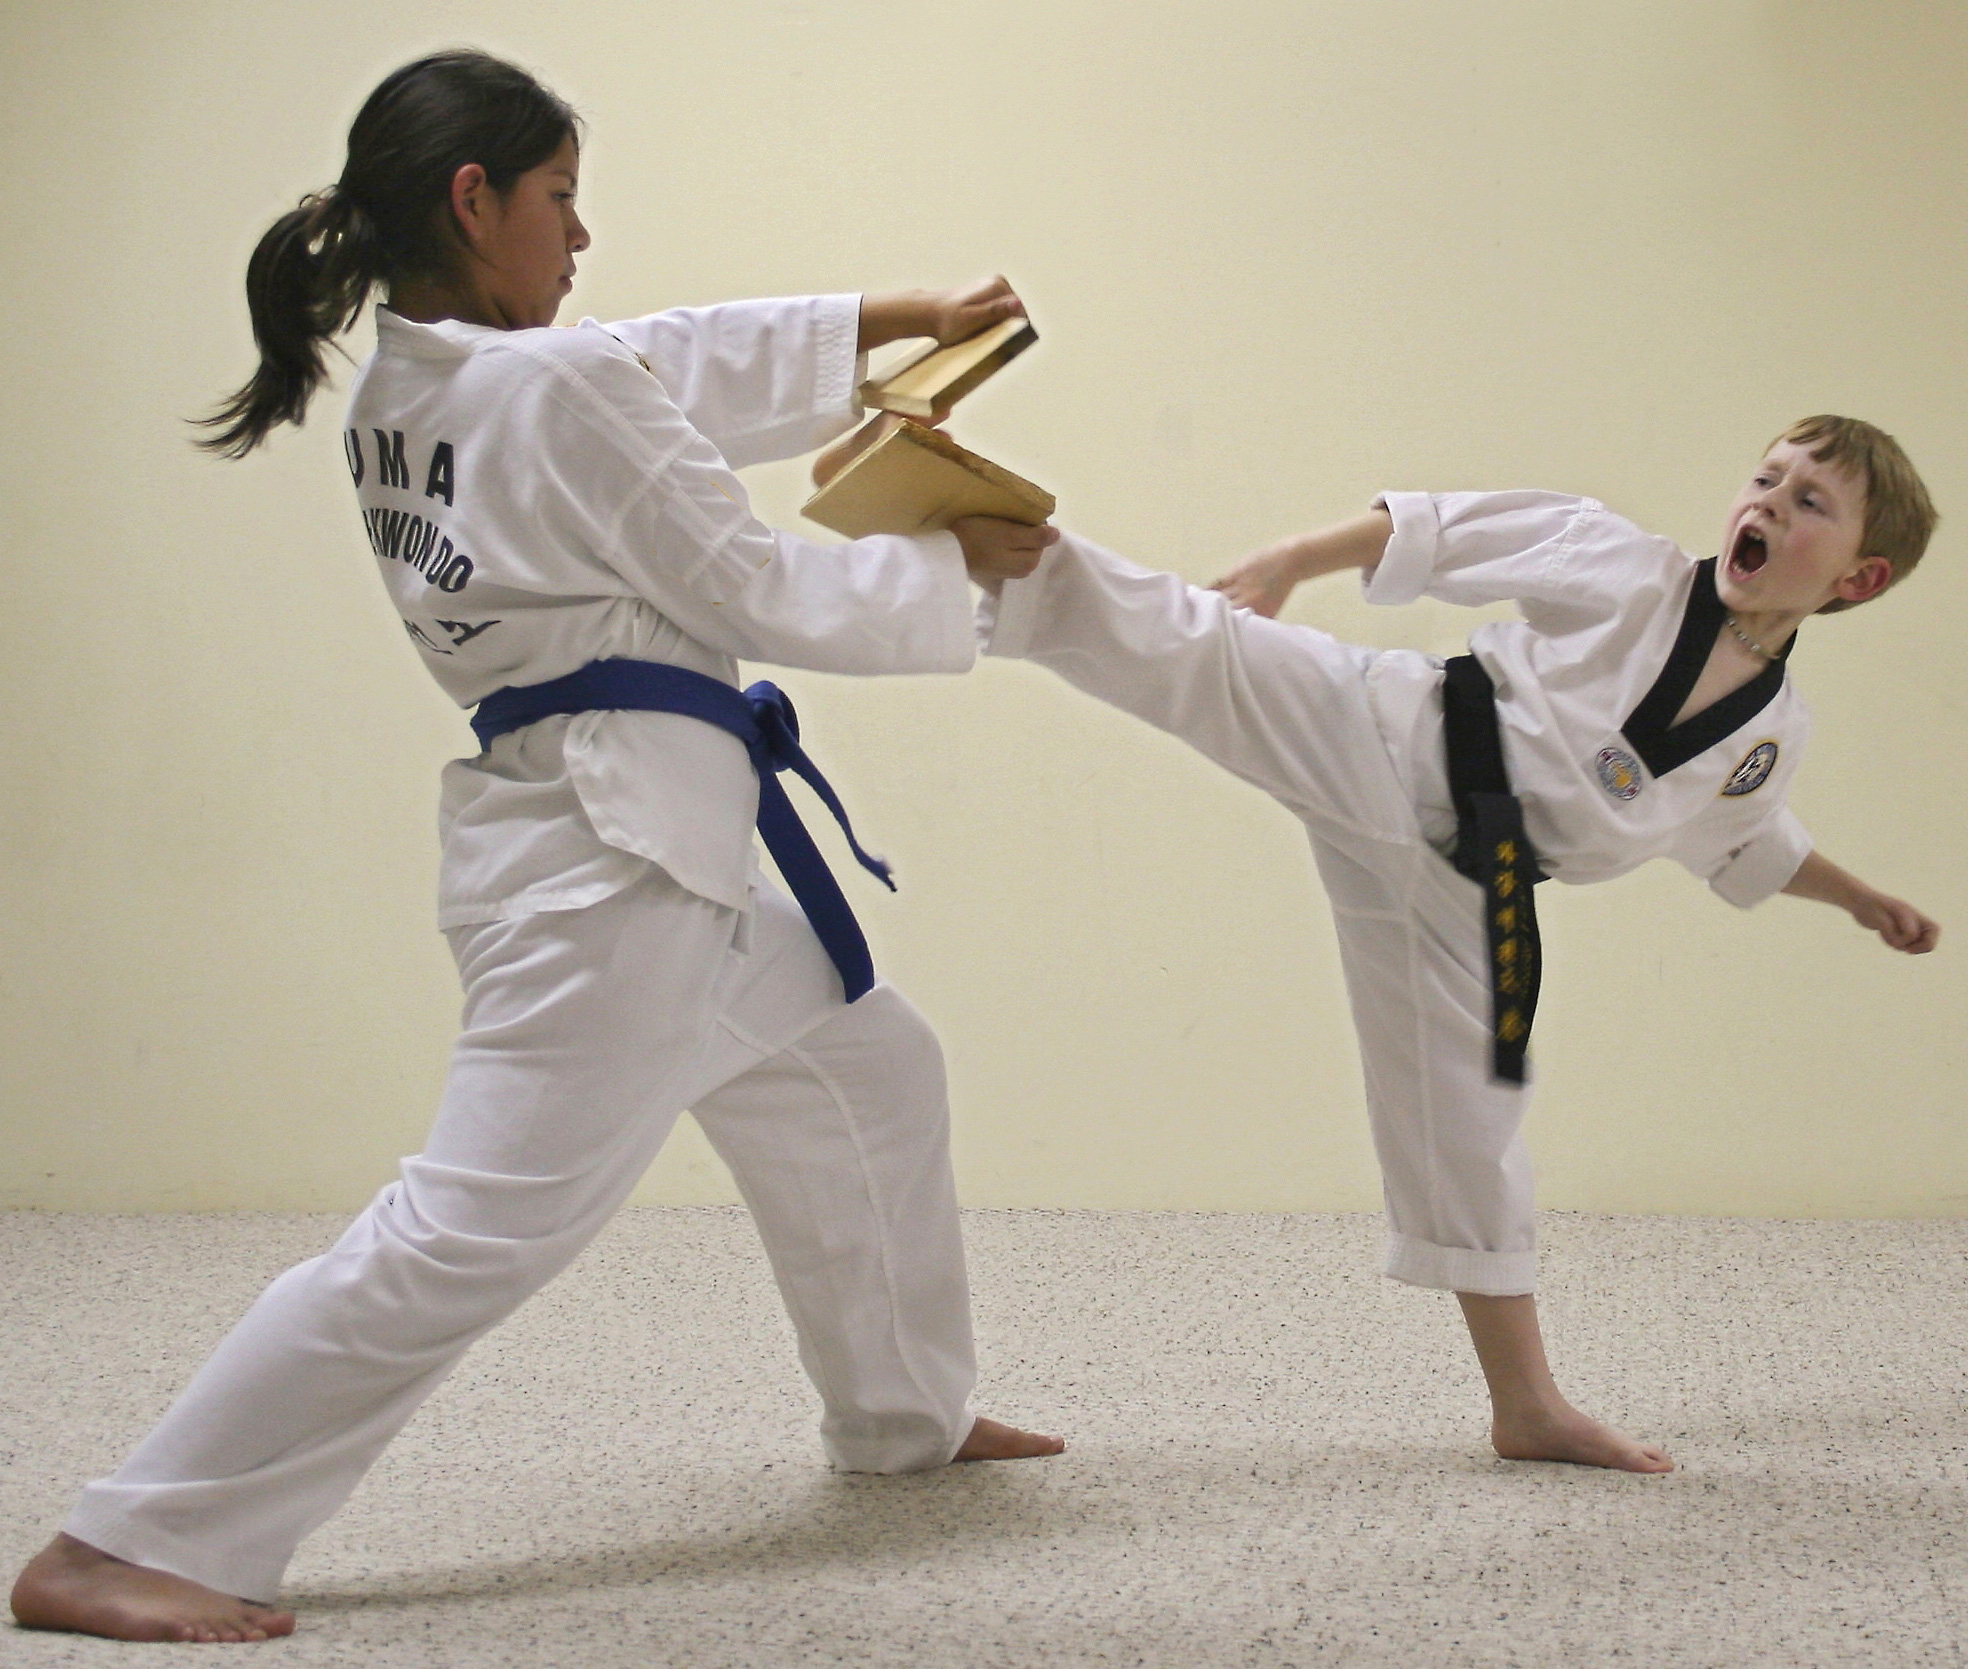 Taekwondo дети. Боевое искусство тхэквондо ИТФ. Занятия карате. Восточные единоборства для детей. Тренировки по тхэквондо